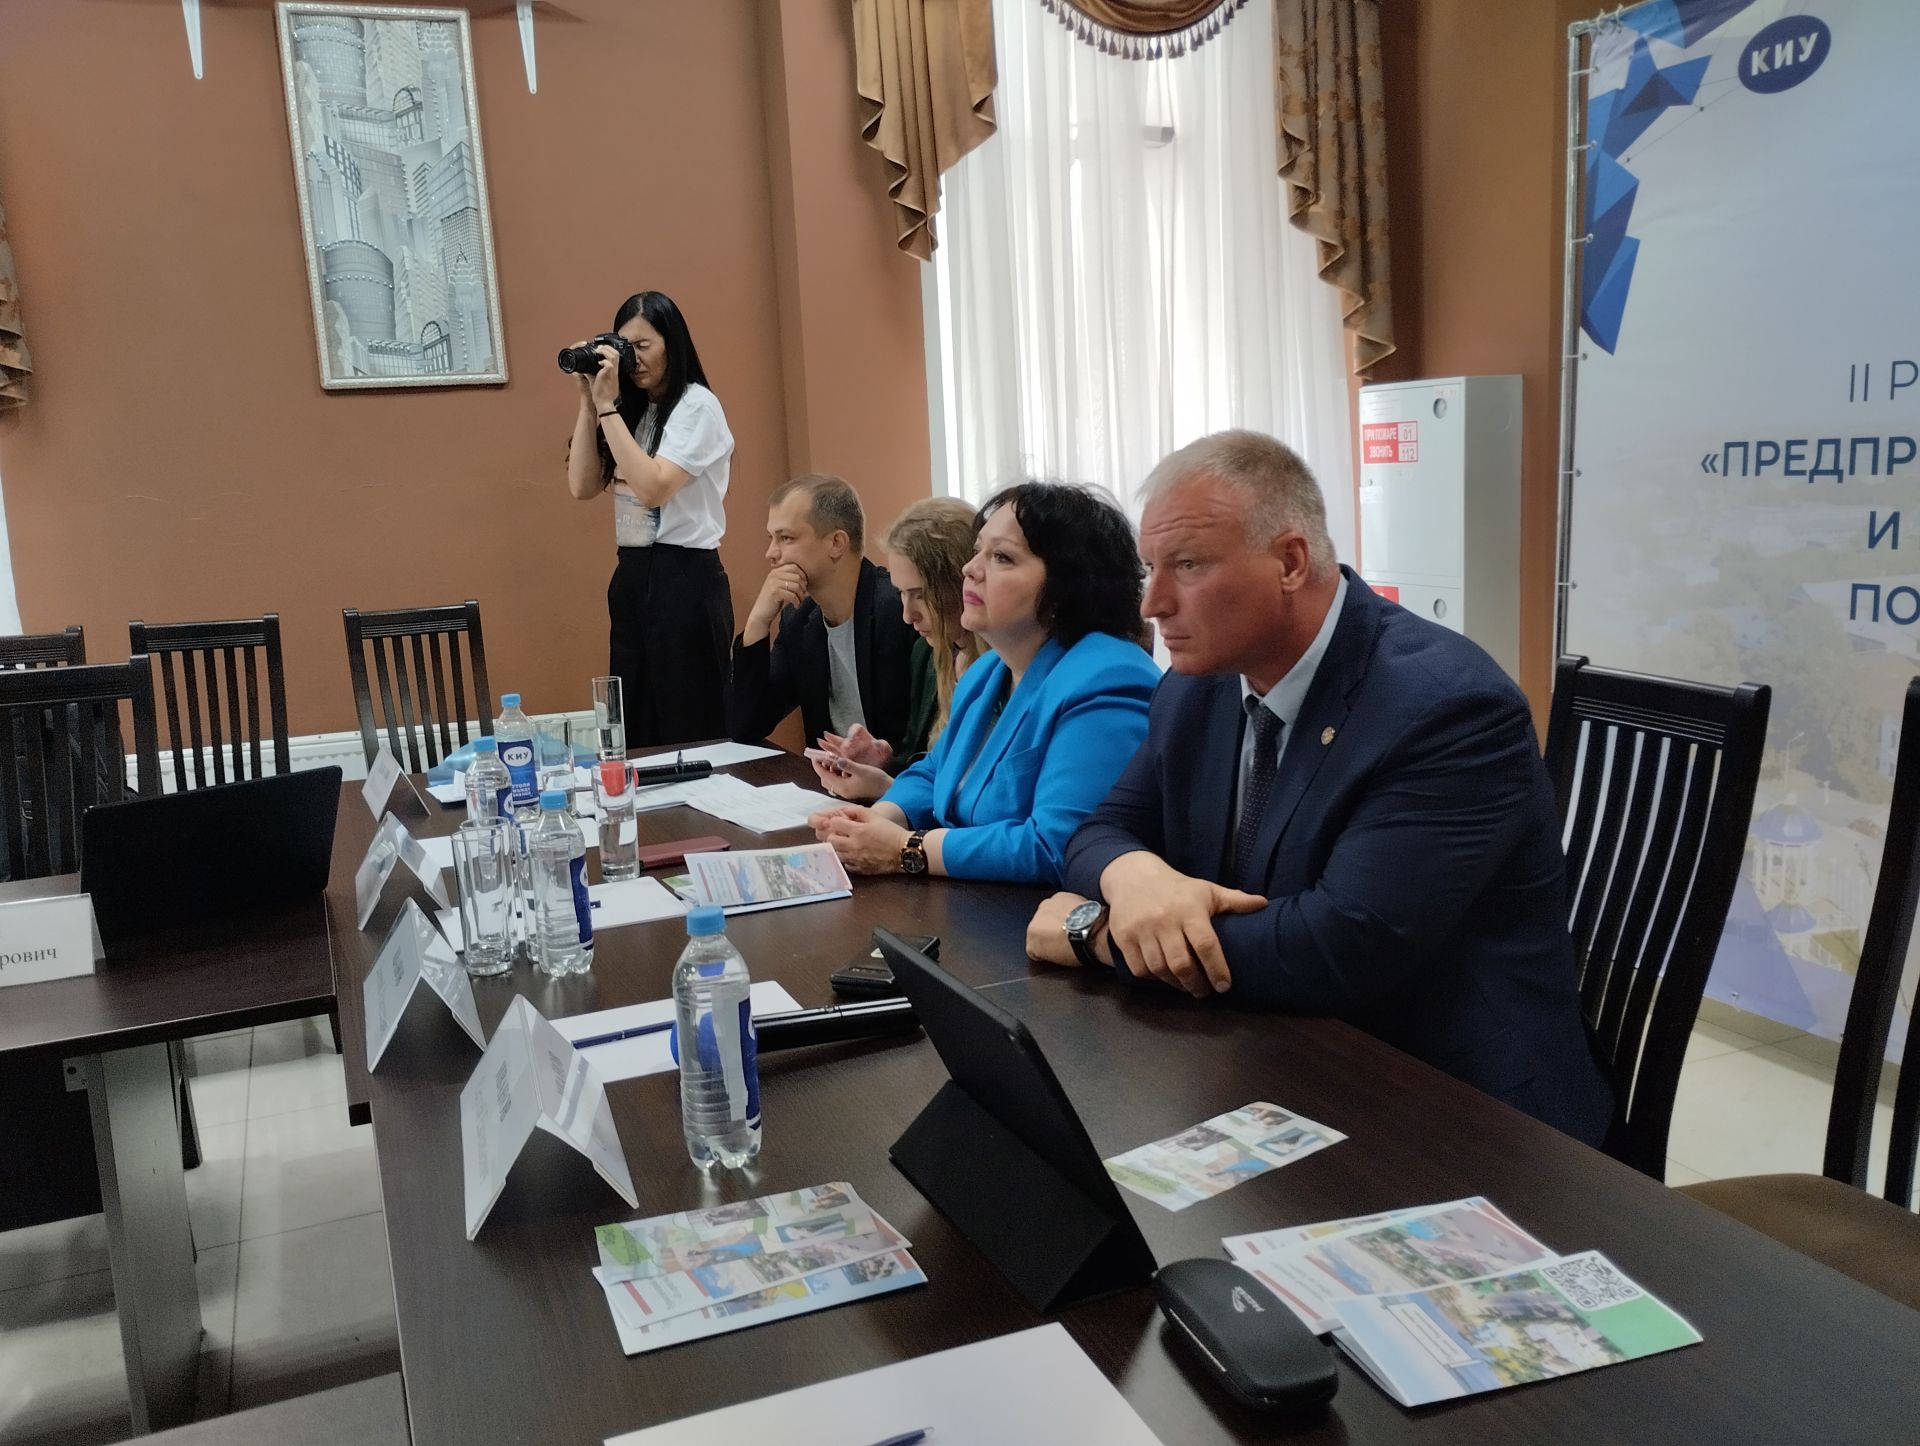 В Чистополе состоялся второй республиканский форум «Предпринимательская инициатива и развитие туристского потенциала Закамского региона»